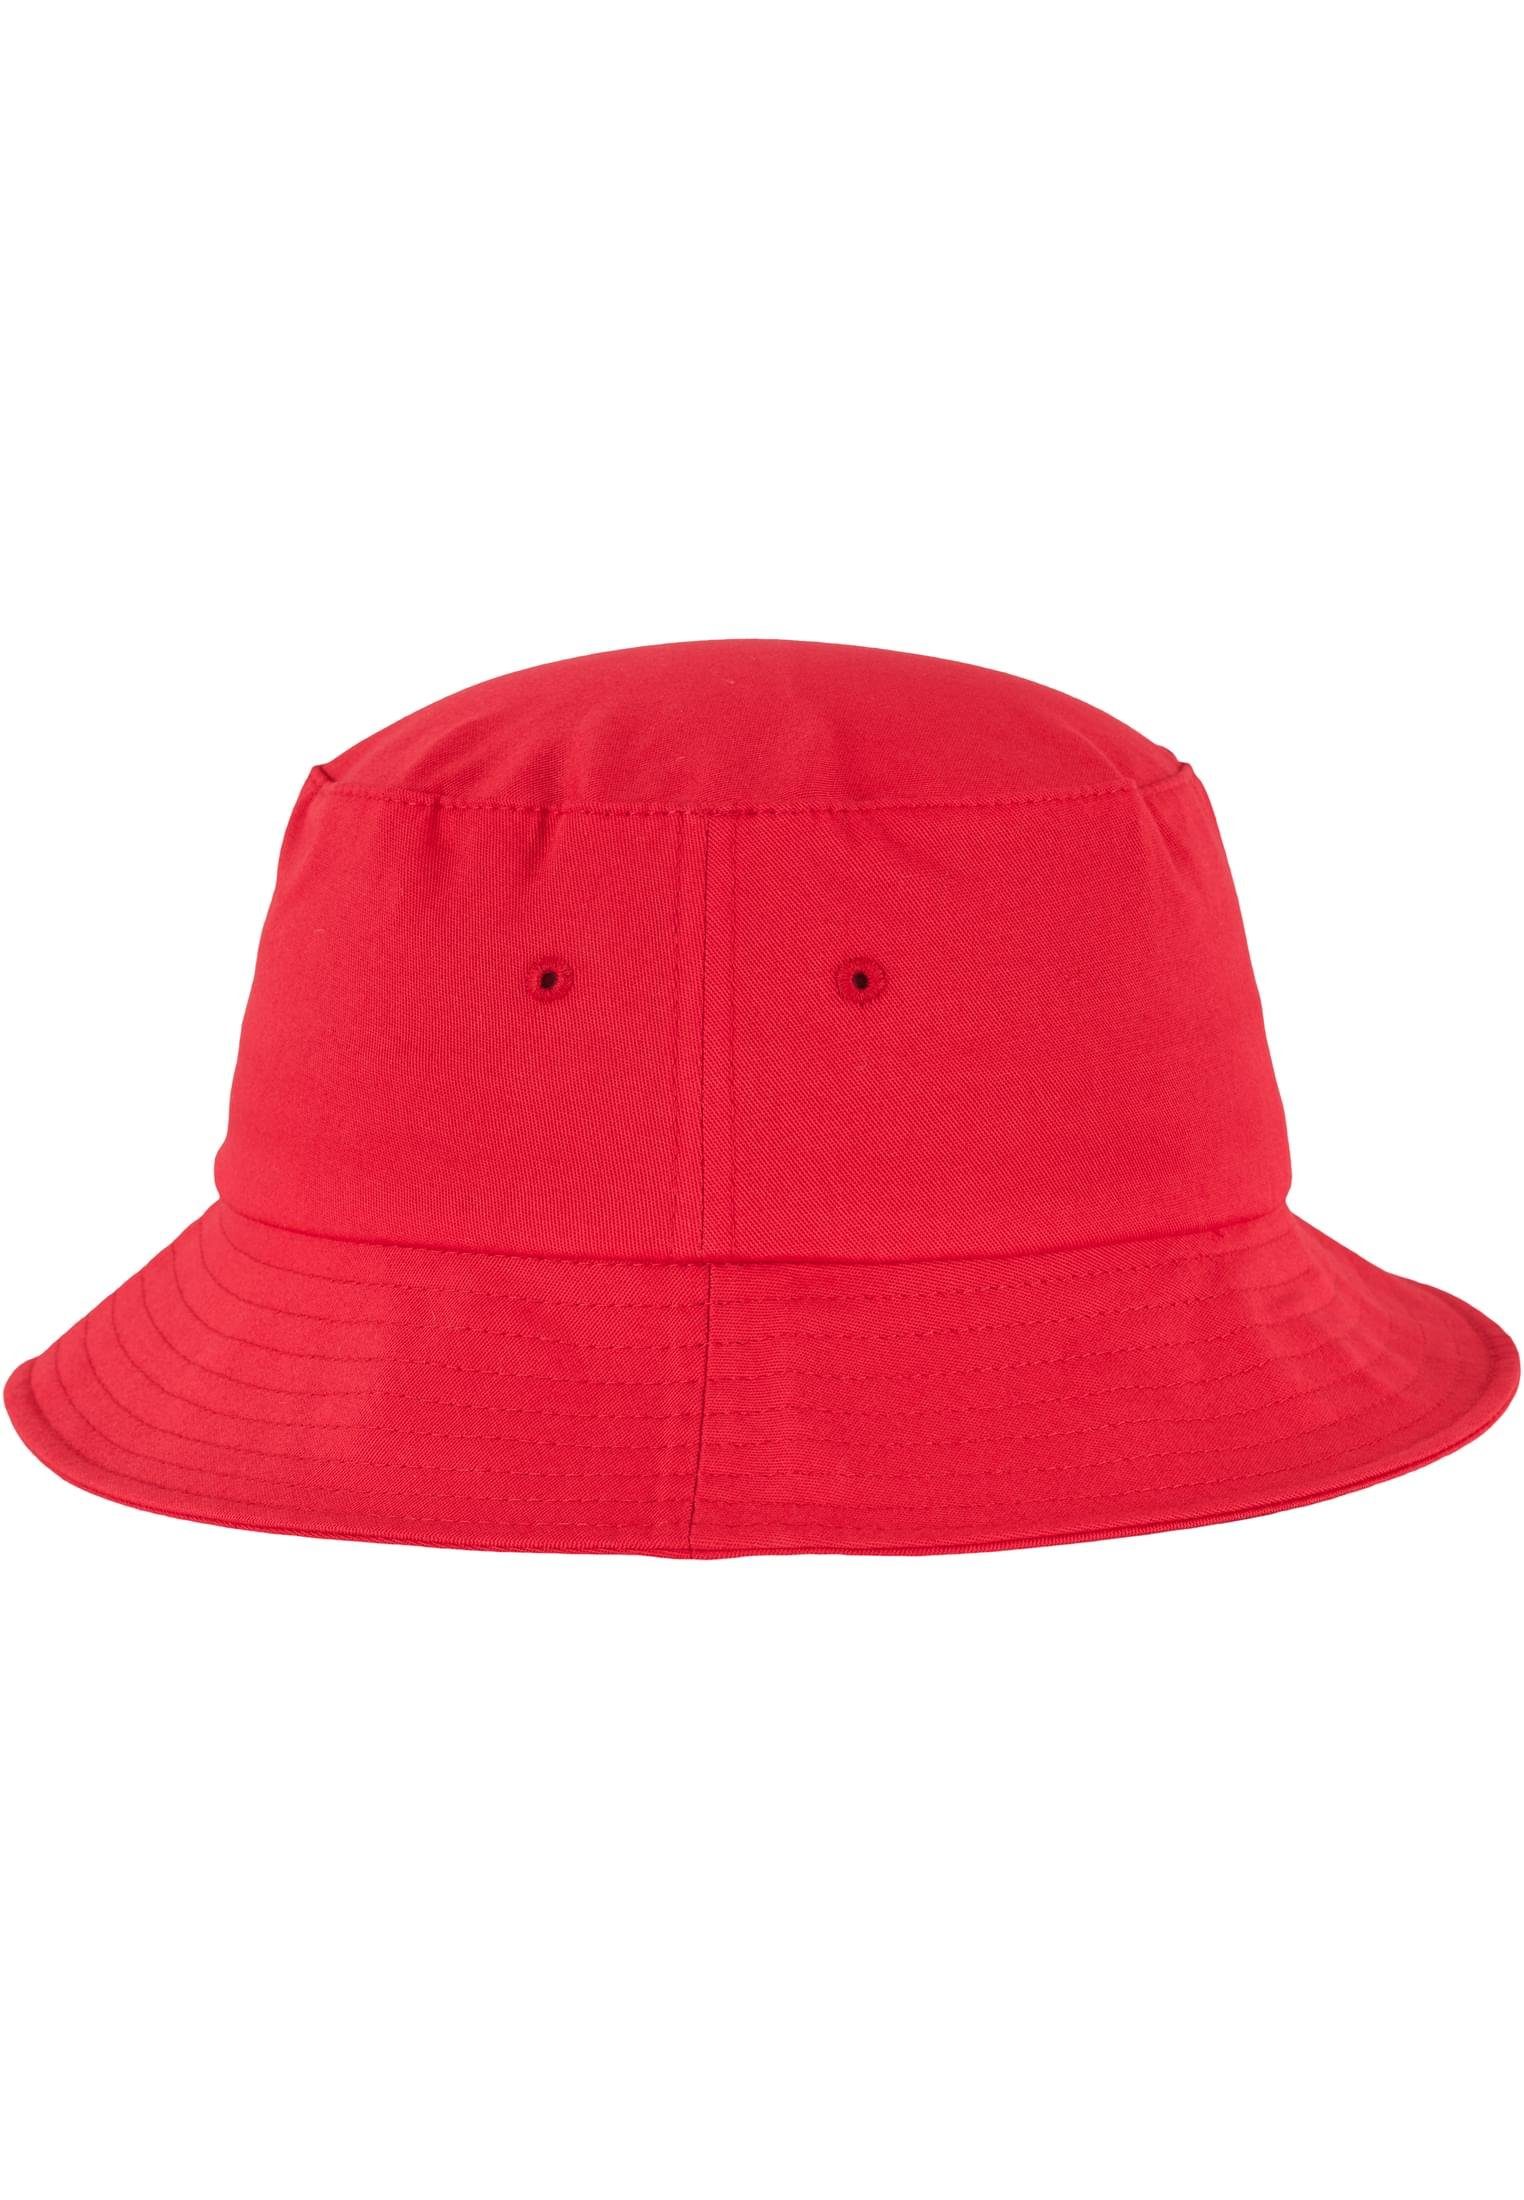 Cotton Twill Cap red Flexfit Bucket Accessoires Flexfit Flex Hat